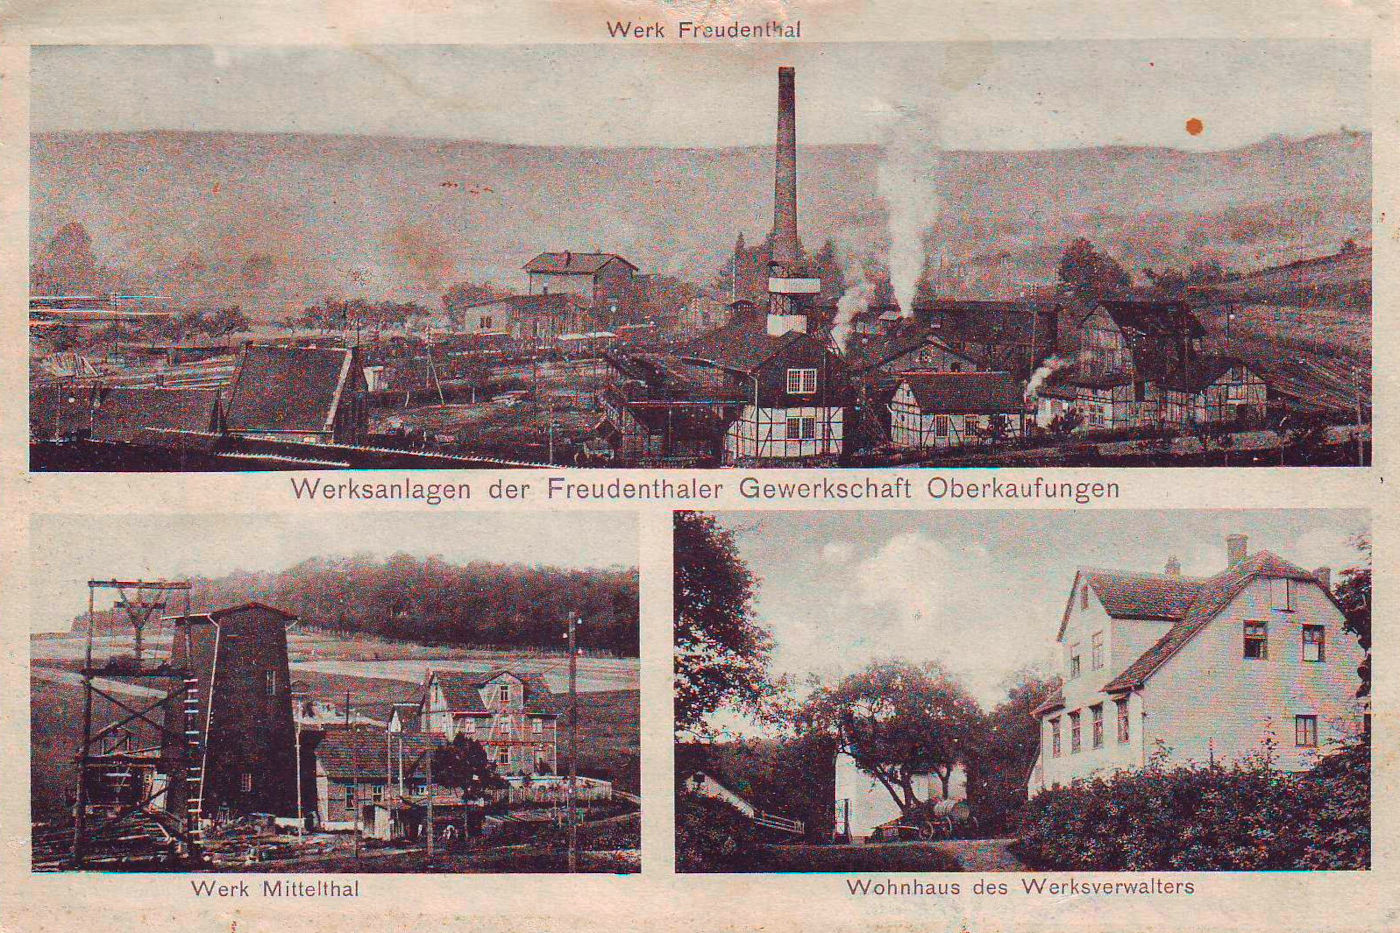 Werksanlagen der Freudenthaler Gewerkschaft Oberkaufungen, Ansichtskarte um 1900